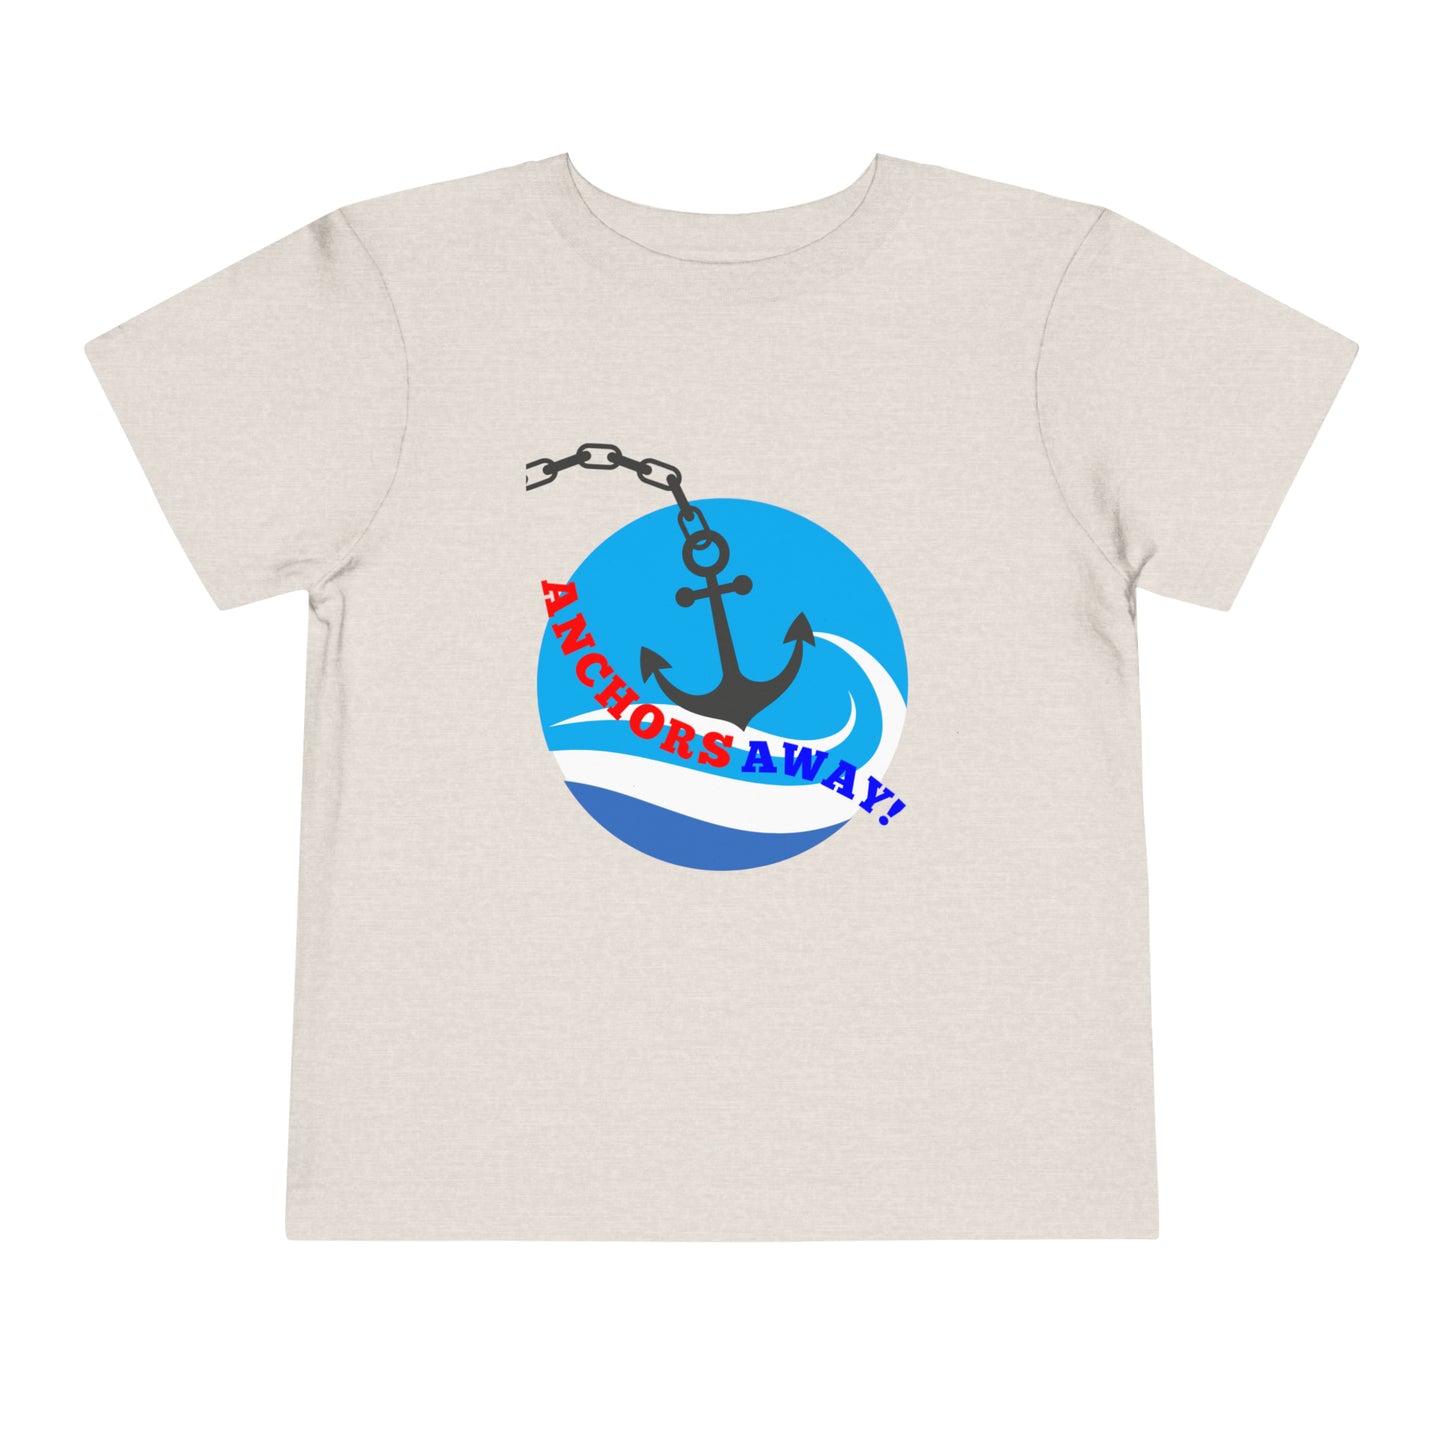 Toddler Anchors Away! - T-shirt